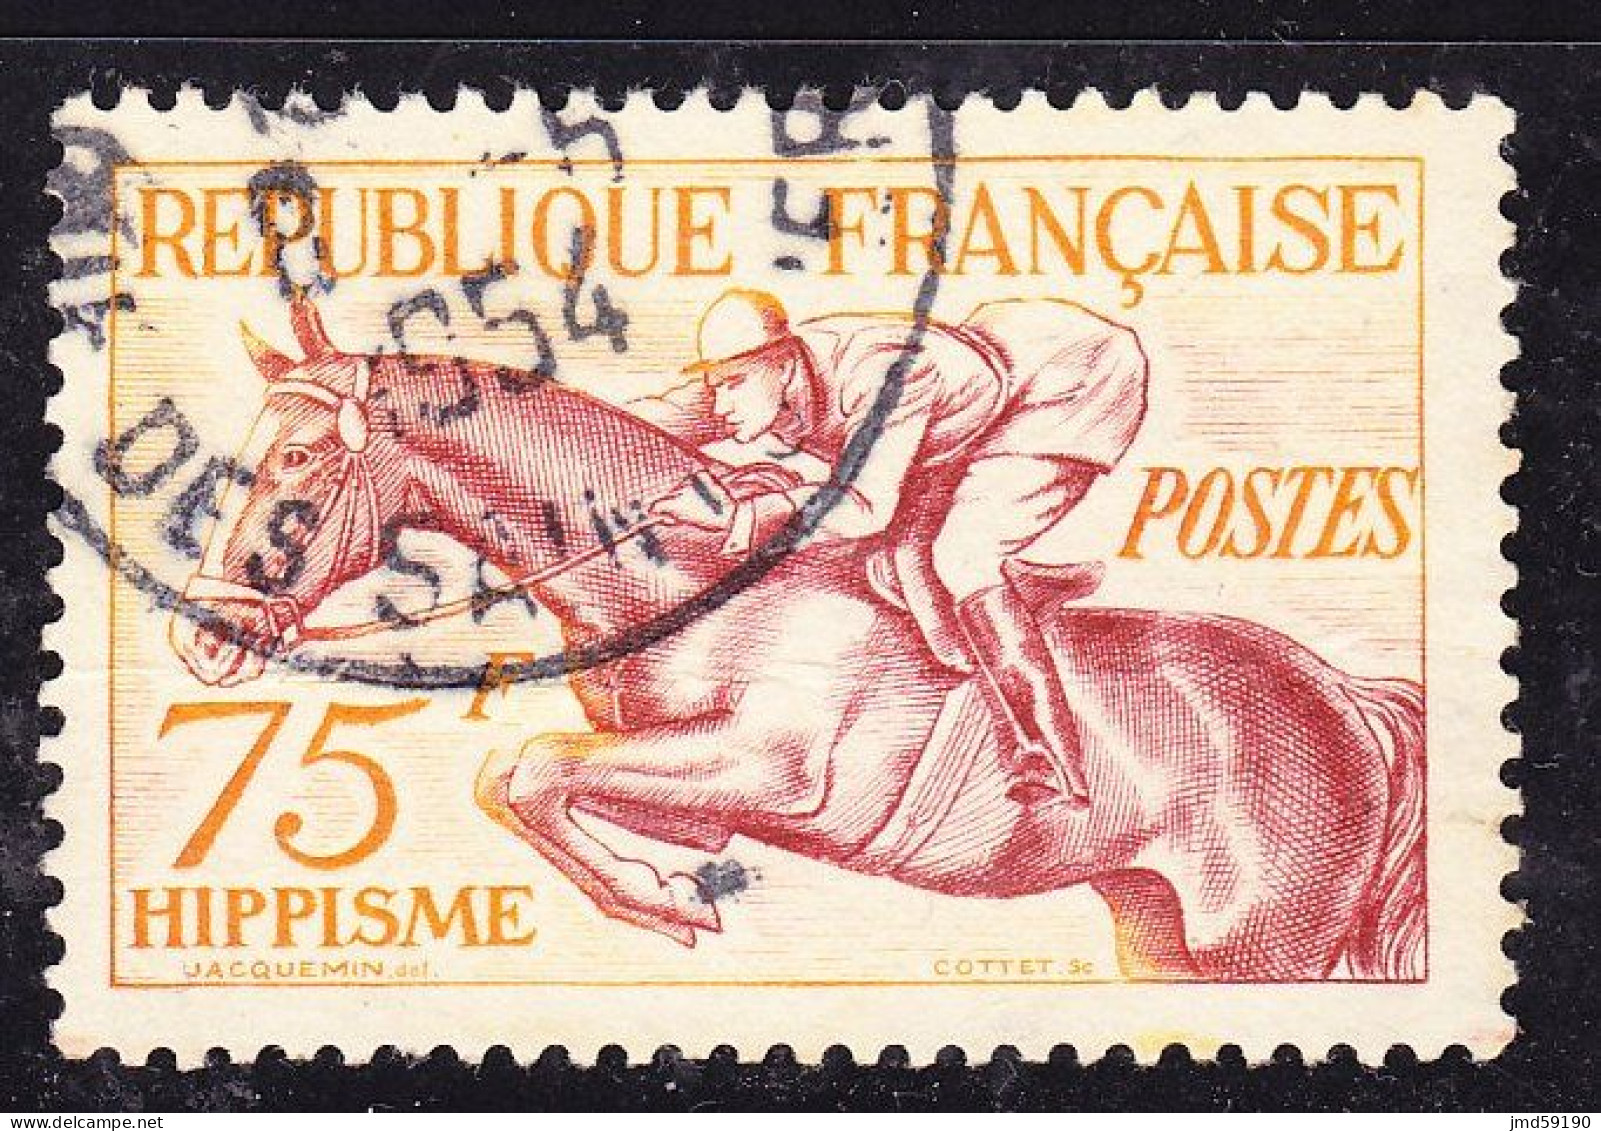 FRANCE Timbre Oblitéré N° 965 - Jeux Olympiques D'HELSINKI 1952 - 75Fr Hippisme - Used Stamps